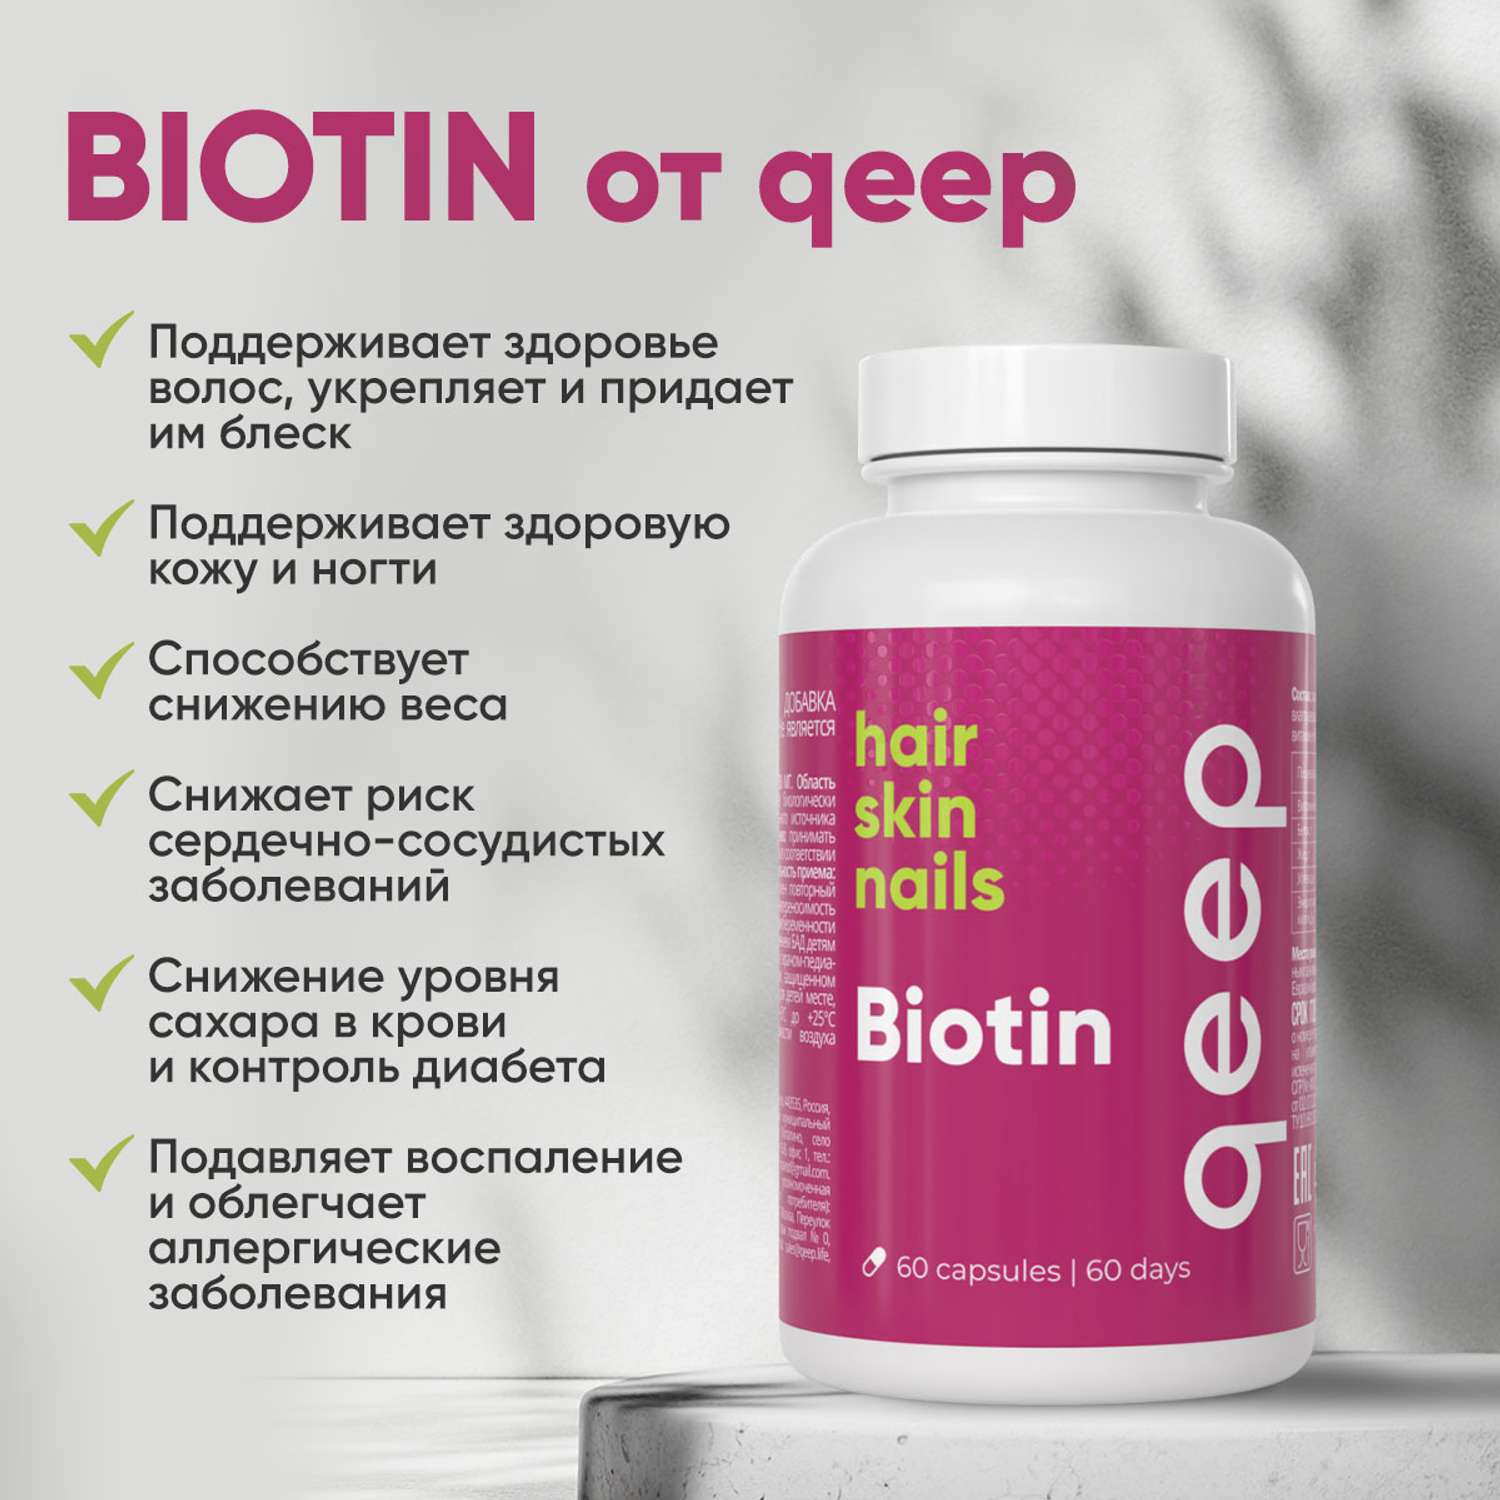 БАД к пище БИОТИН qeep витамины для волос ногтей кожи 60 капсул - фото 7